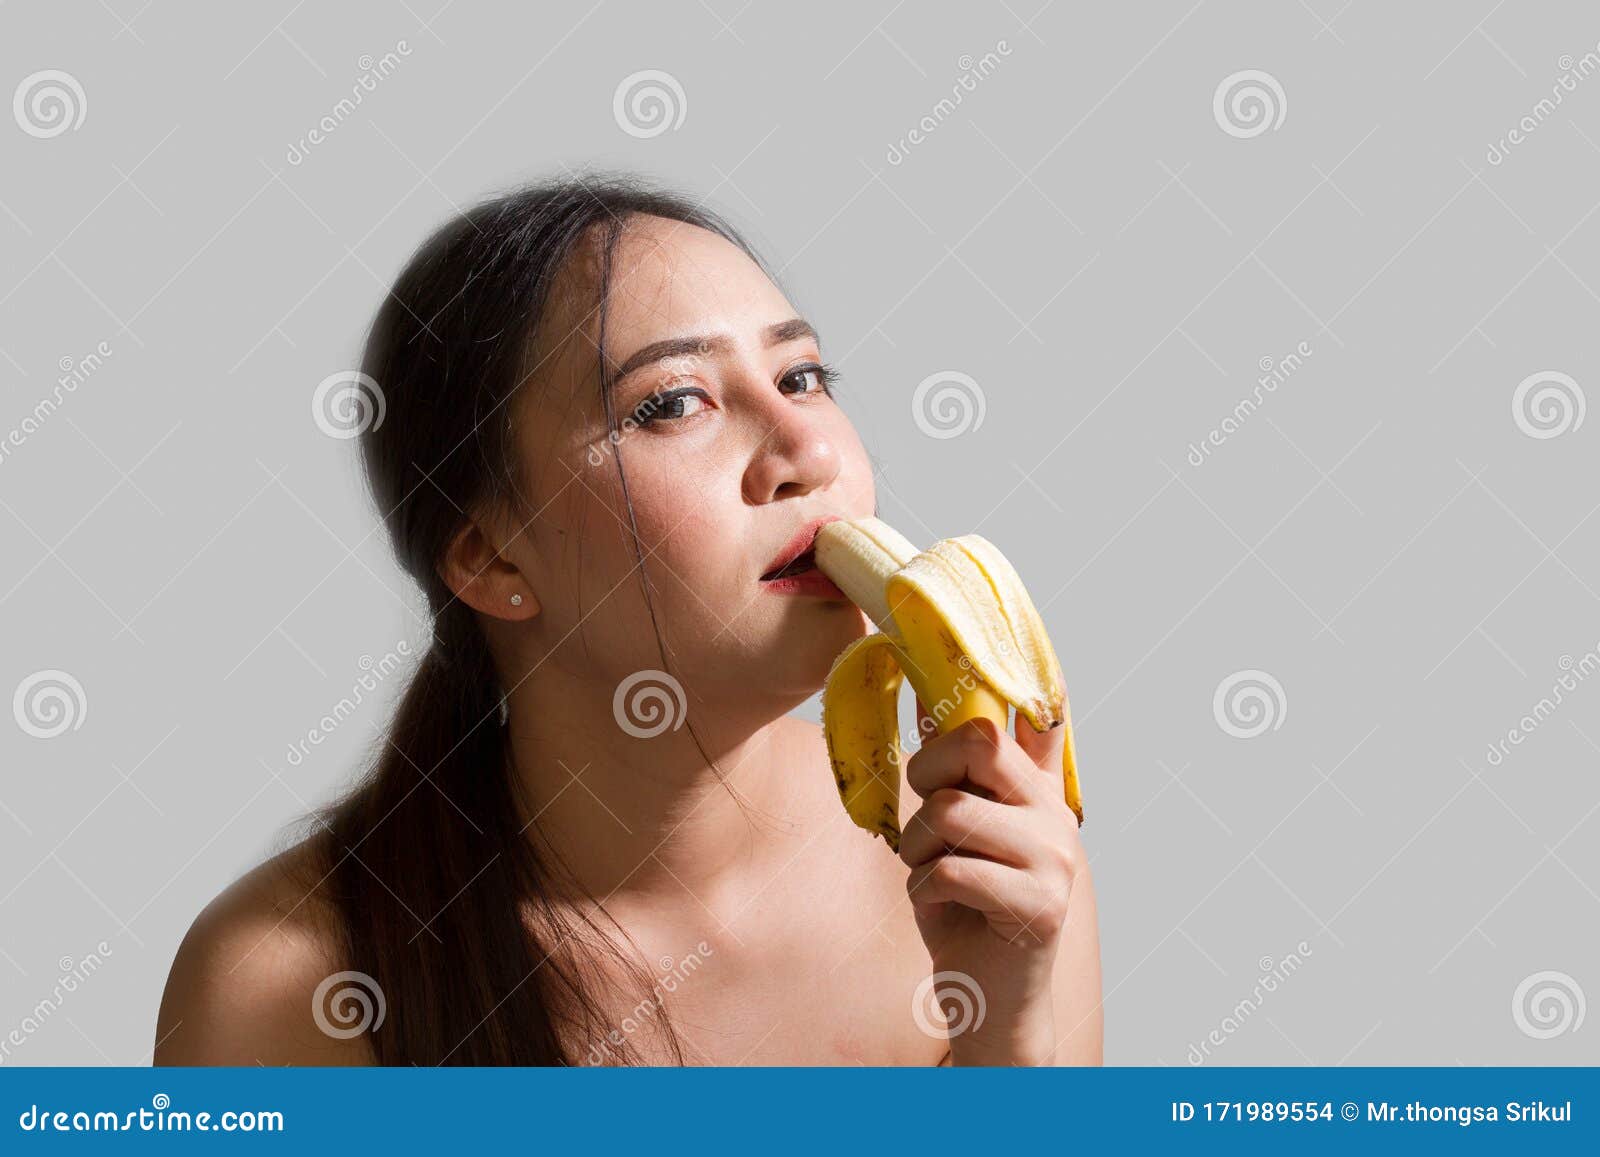 Eating bananas women 